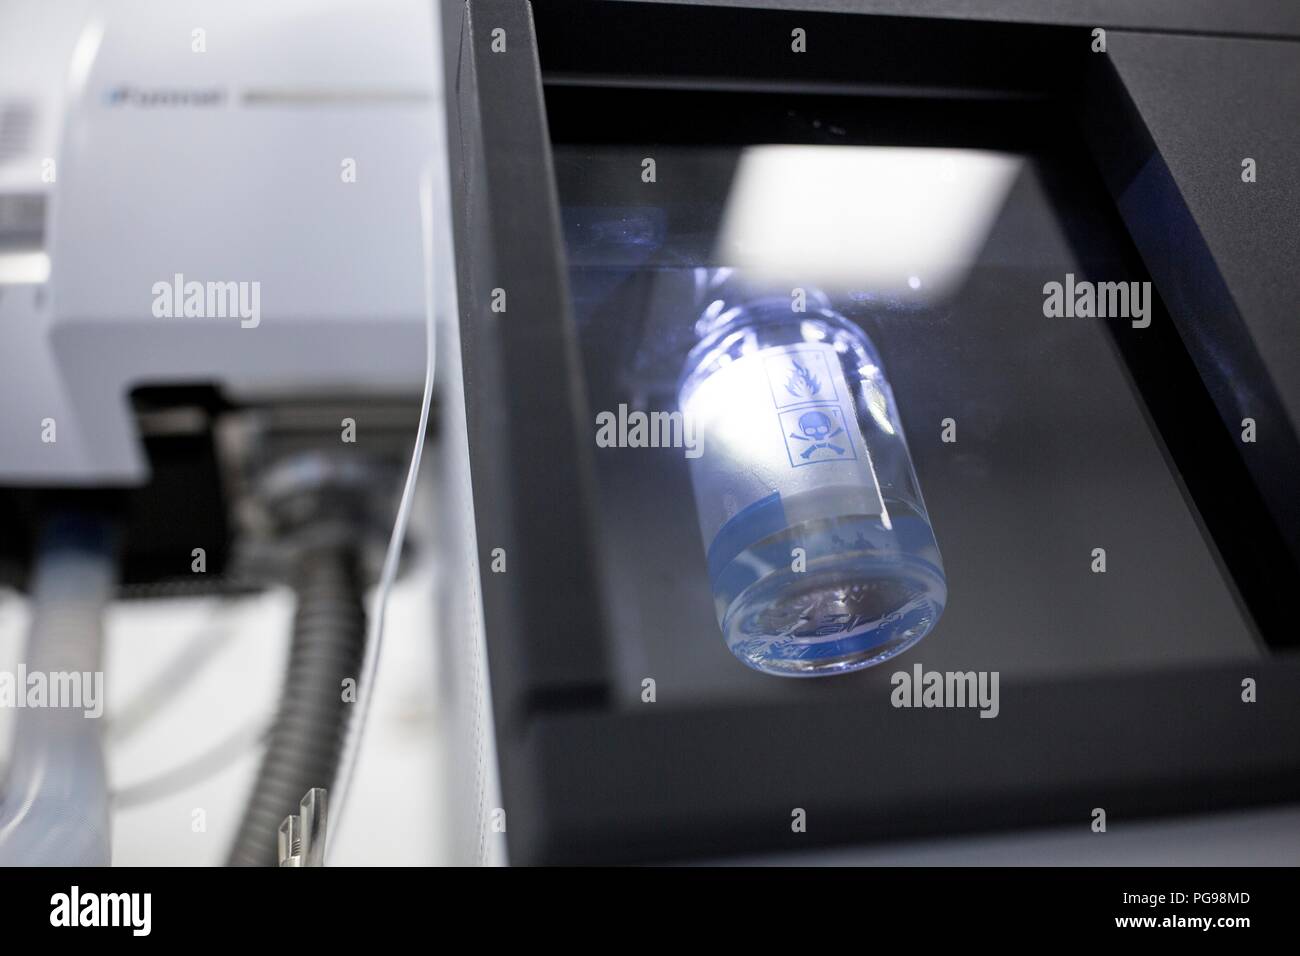 Probe für die Analyse von flüssigkeitschromatographie in einem autosampler Maschine. Diese Maschine liefert Proben für die Flüssigkeitschromatographie. Flüssigkeitschromatographie wird verwendet, um Verbindungen, die aus einer Mischung von Verbindungen, die in einer Flüssigkeit gelöst zu trennen. Stockfoto